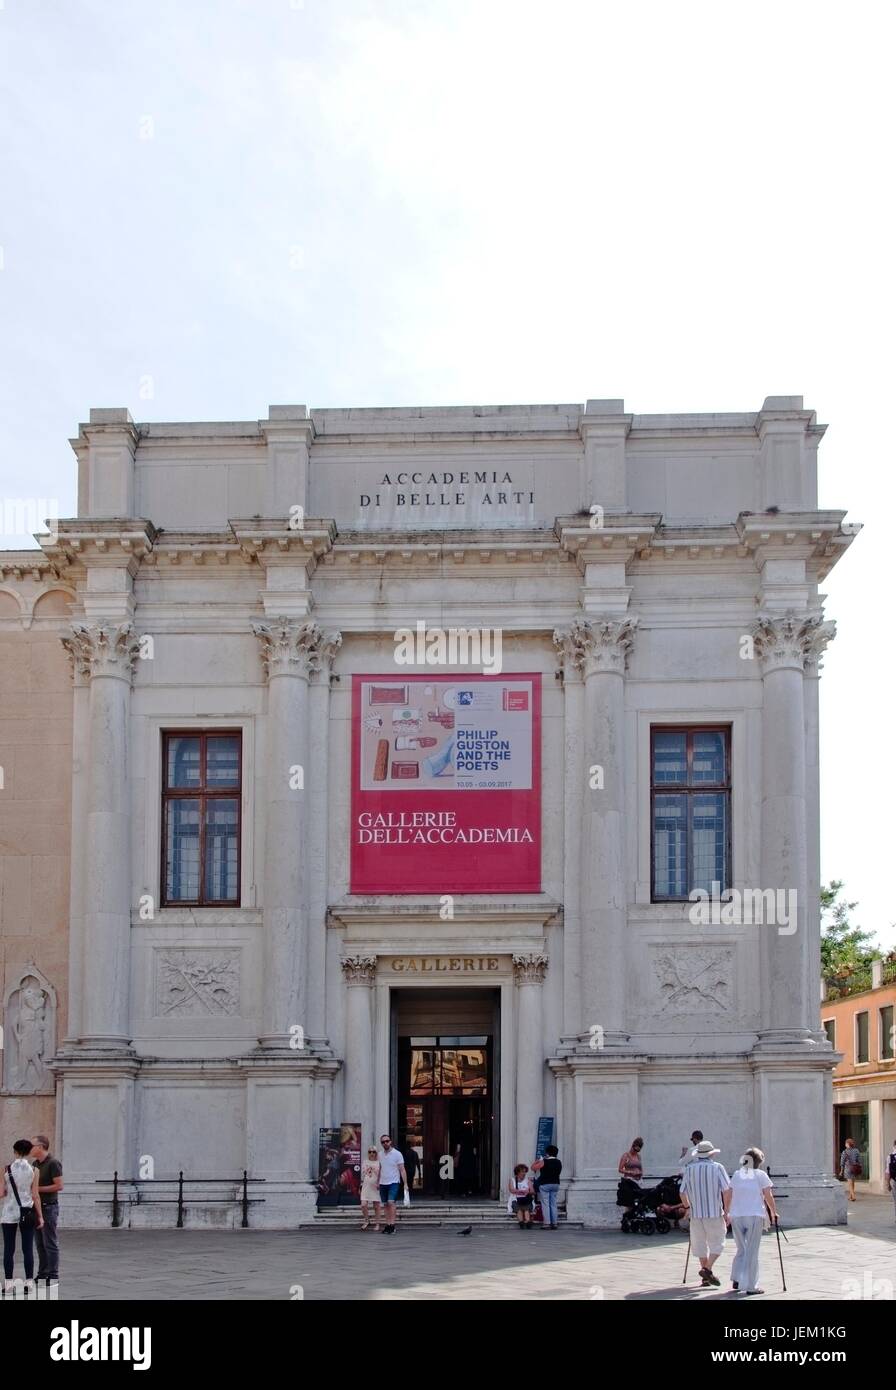 Venezia Veneto Italia. Gallerie dell'Accademia facade Stock Photo